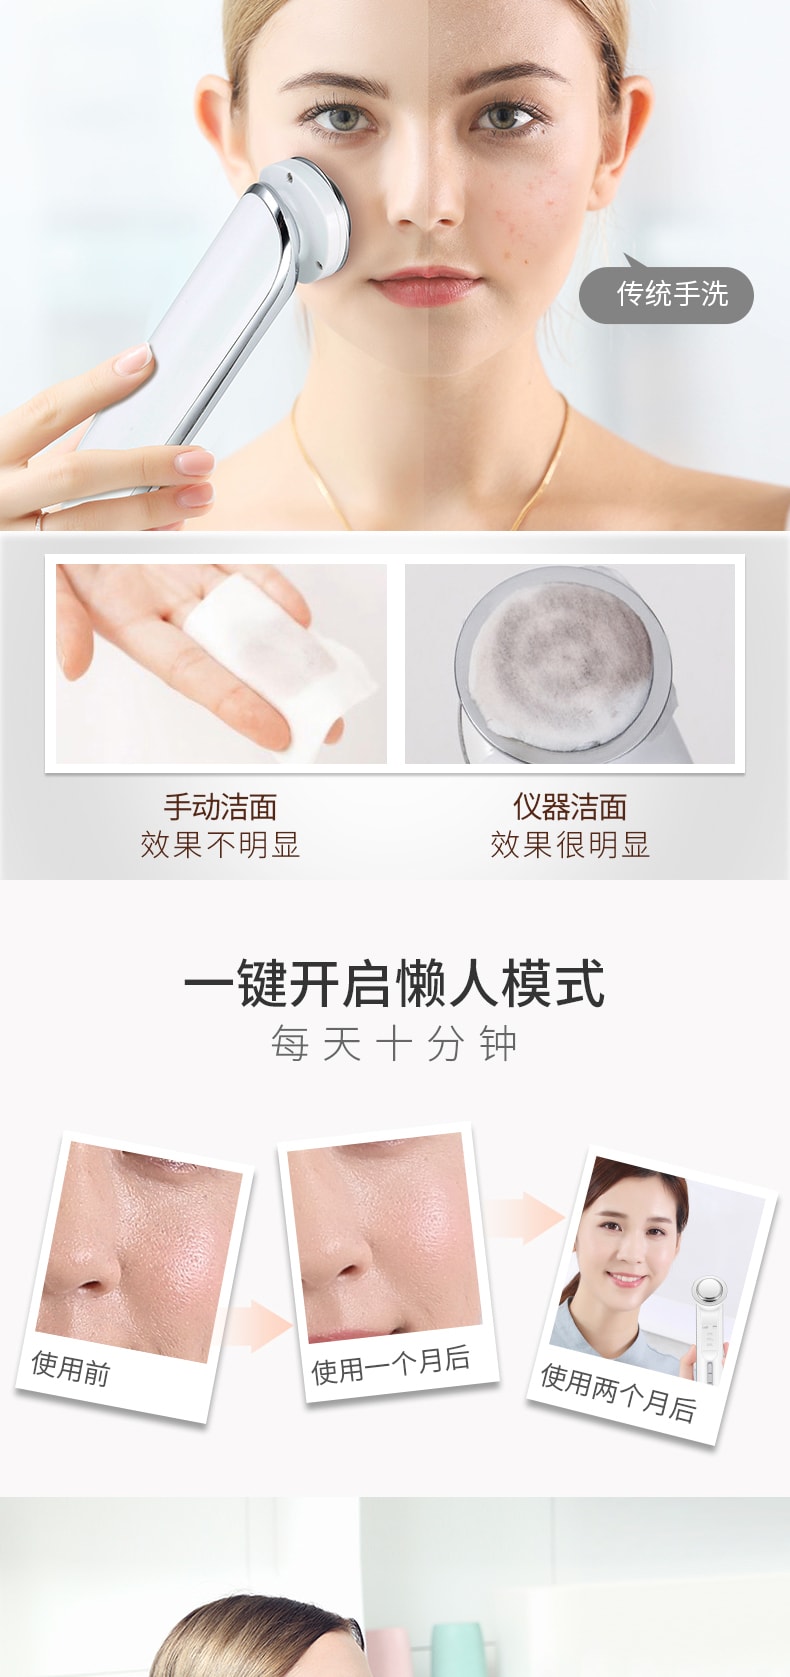 中國 K·SKIN金稻 面膜精華導入儀 美容儀家用 臉部臉部清潔 離子導出儀 卸妝儀器 KD9960